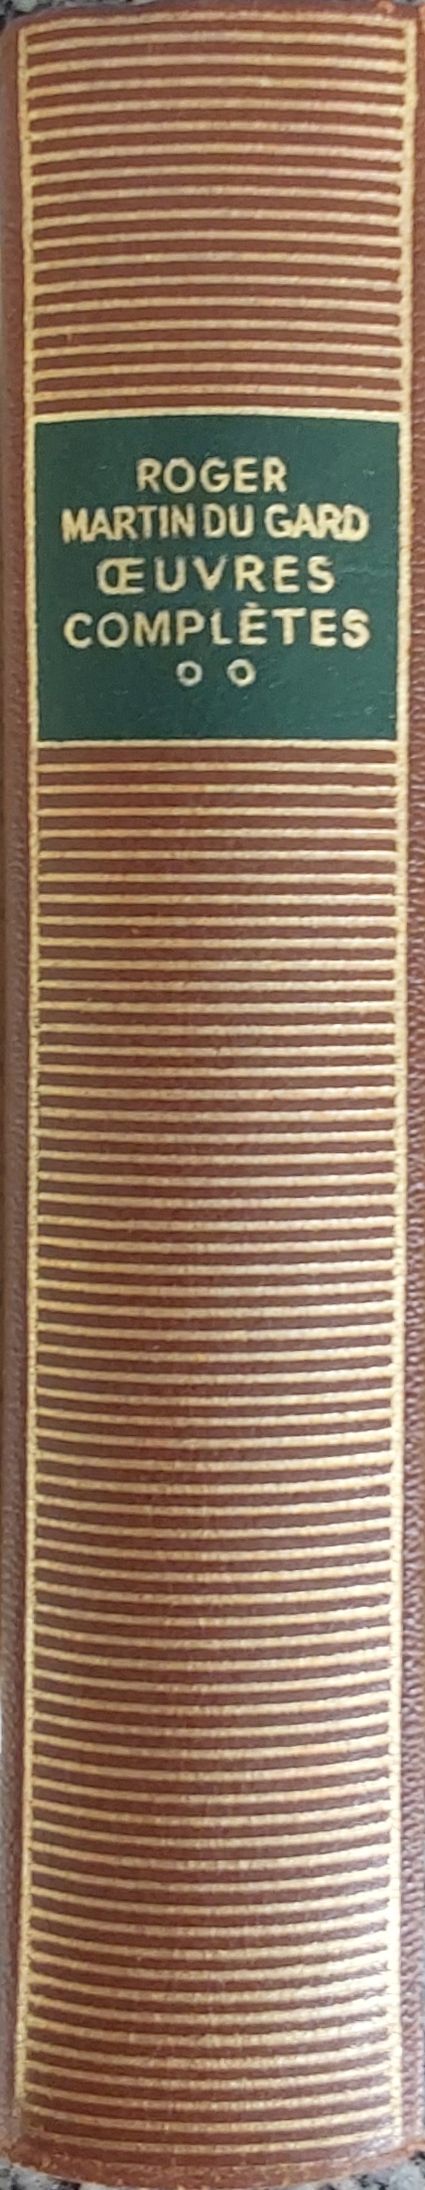 Volumes 114 de Roger Martin du Gard dans la Bibliothèque de la Pléiade.